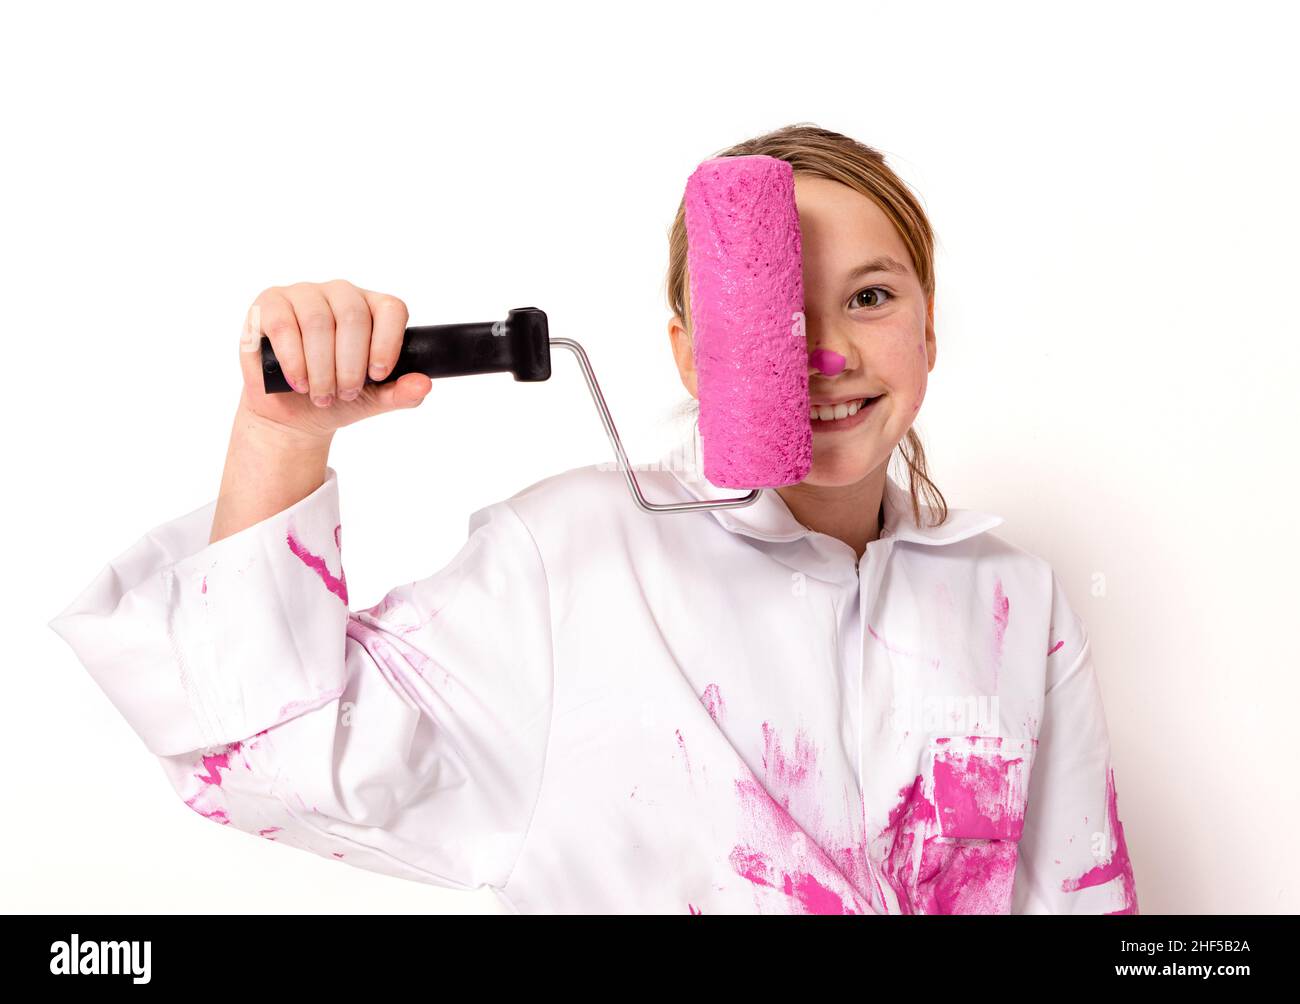 Das junge Mädchen, 10 Jahre alt, hält eine Rolle mit rosa Farbe vor ihrem Gesicht. Sie blickt mit einem freundlichen Lächeln auf die Kamera. Stockfoto